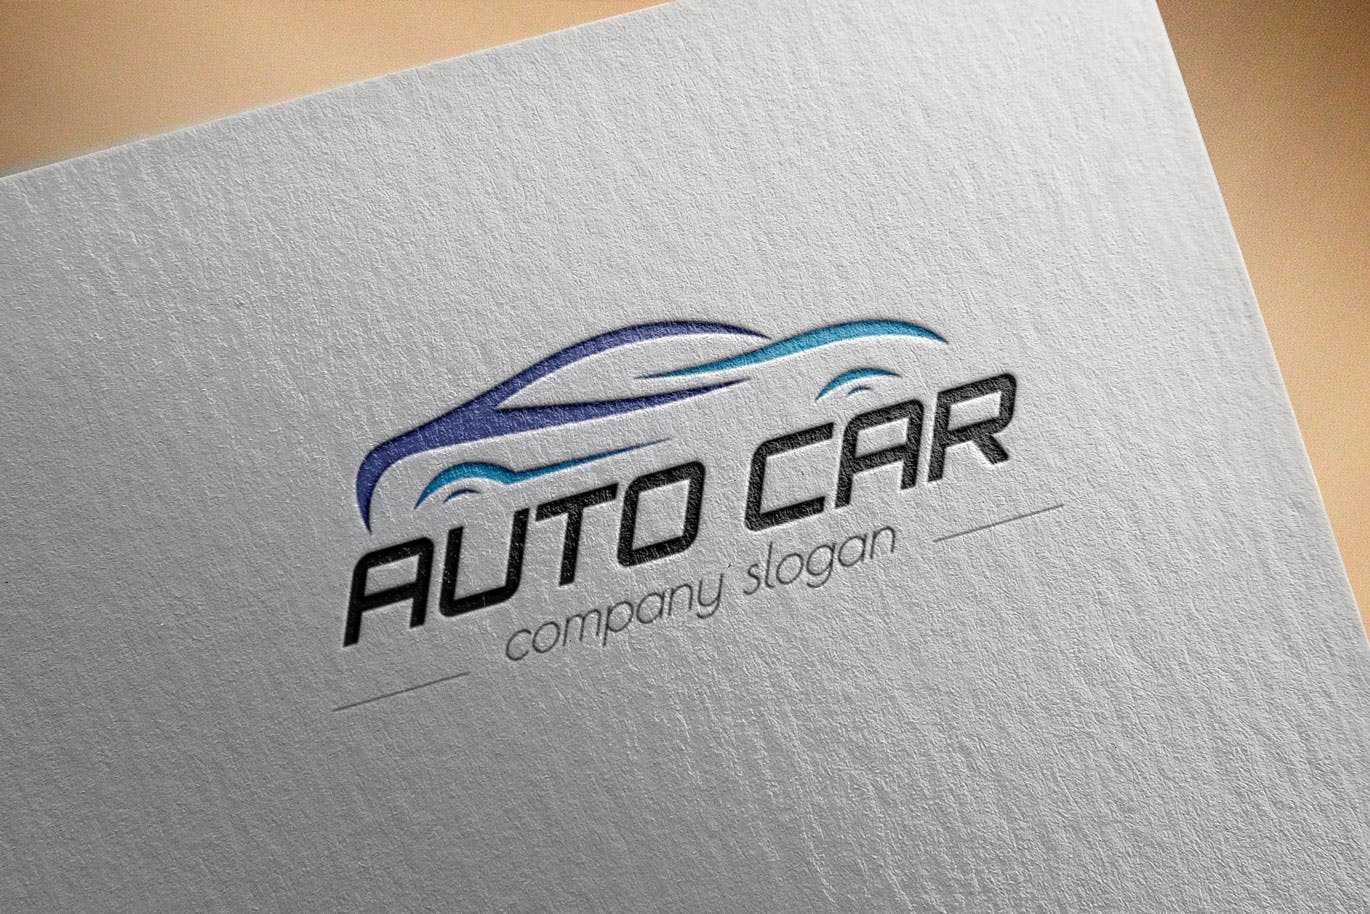 汽车相关企业品牌Logo设计素材库精选模板 Auto Car Business Logo Template插图(2)